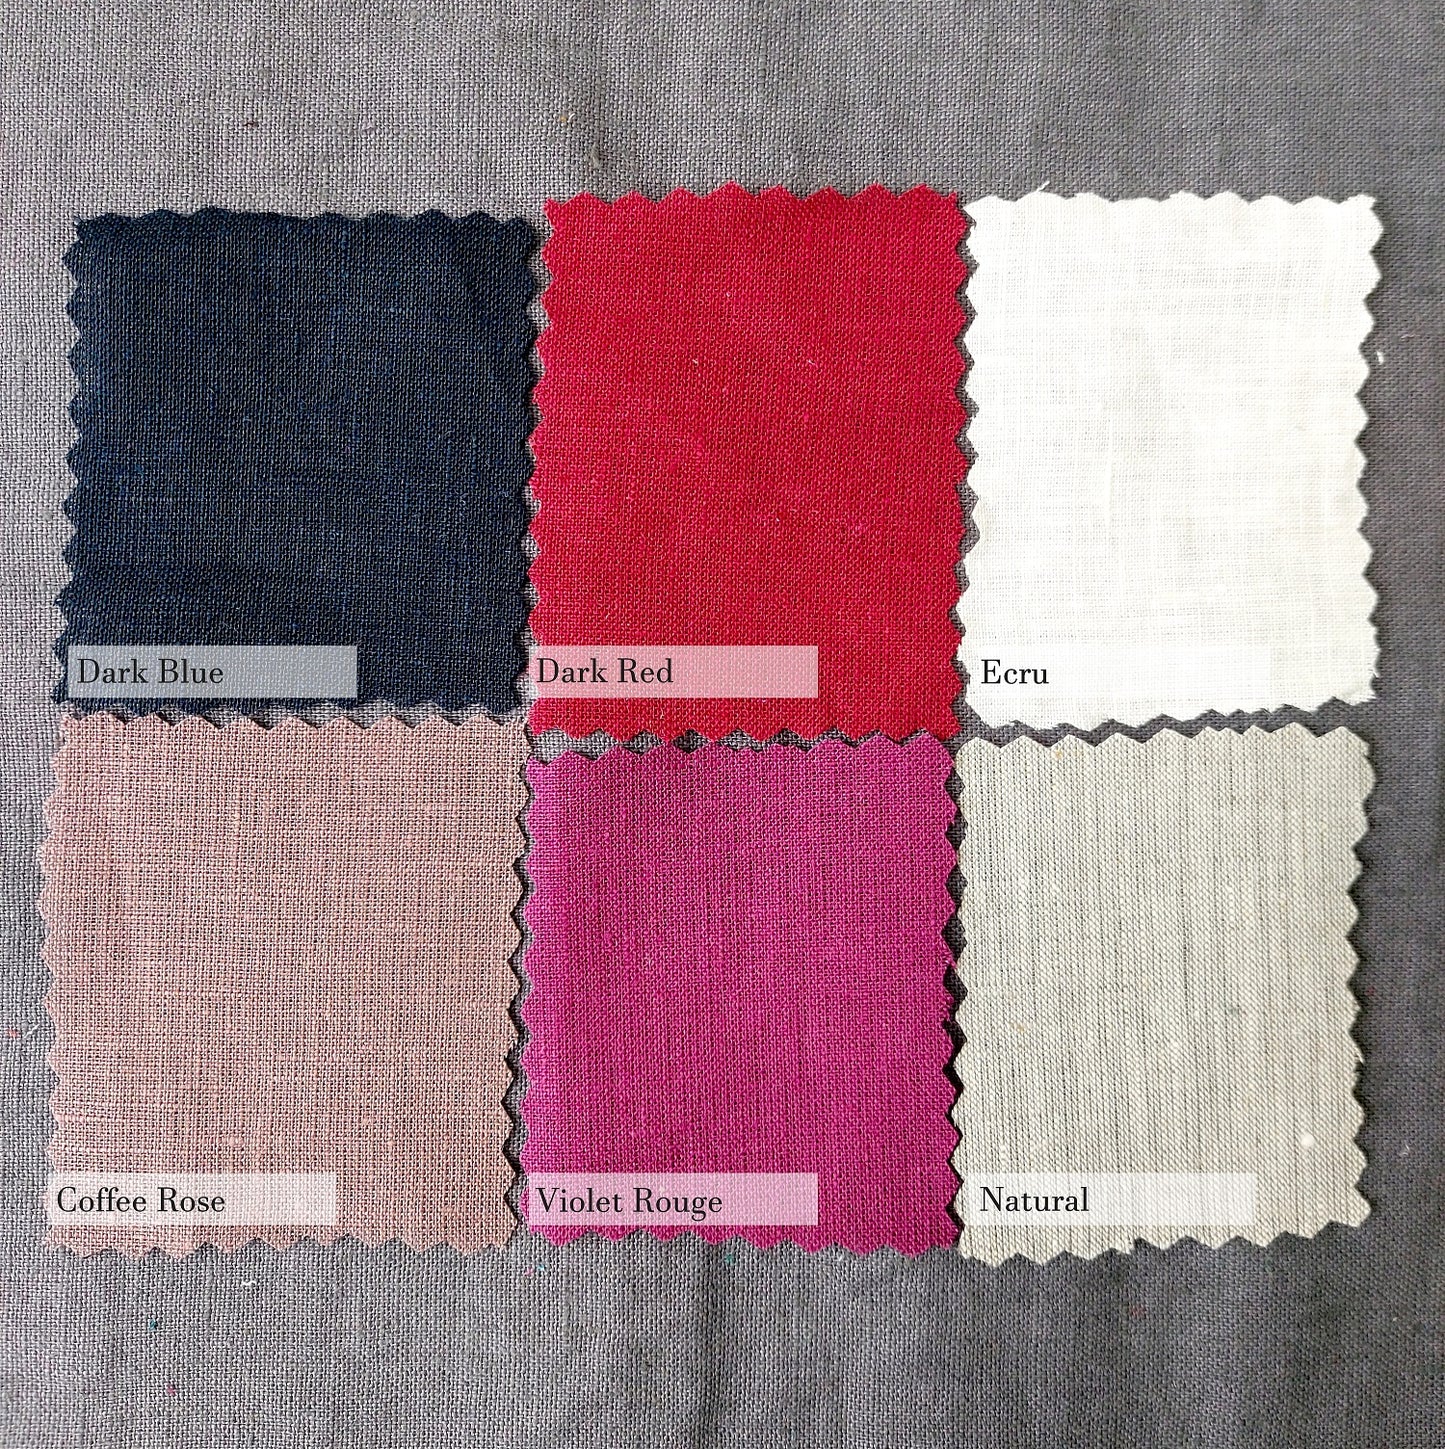 Linen Bedding Set, 6 Colors, Linen Duvet Cover+ Linen Pillowcase